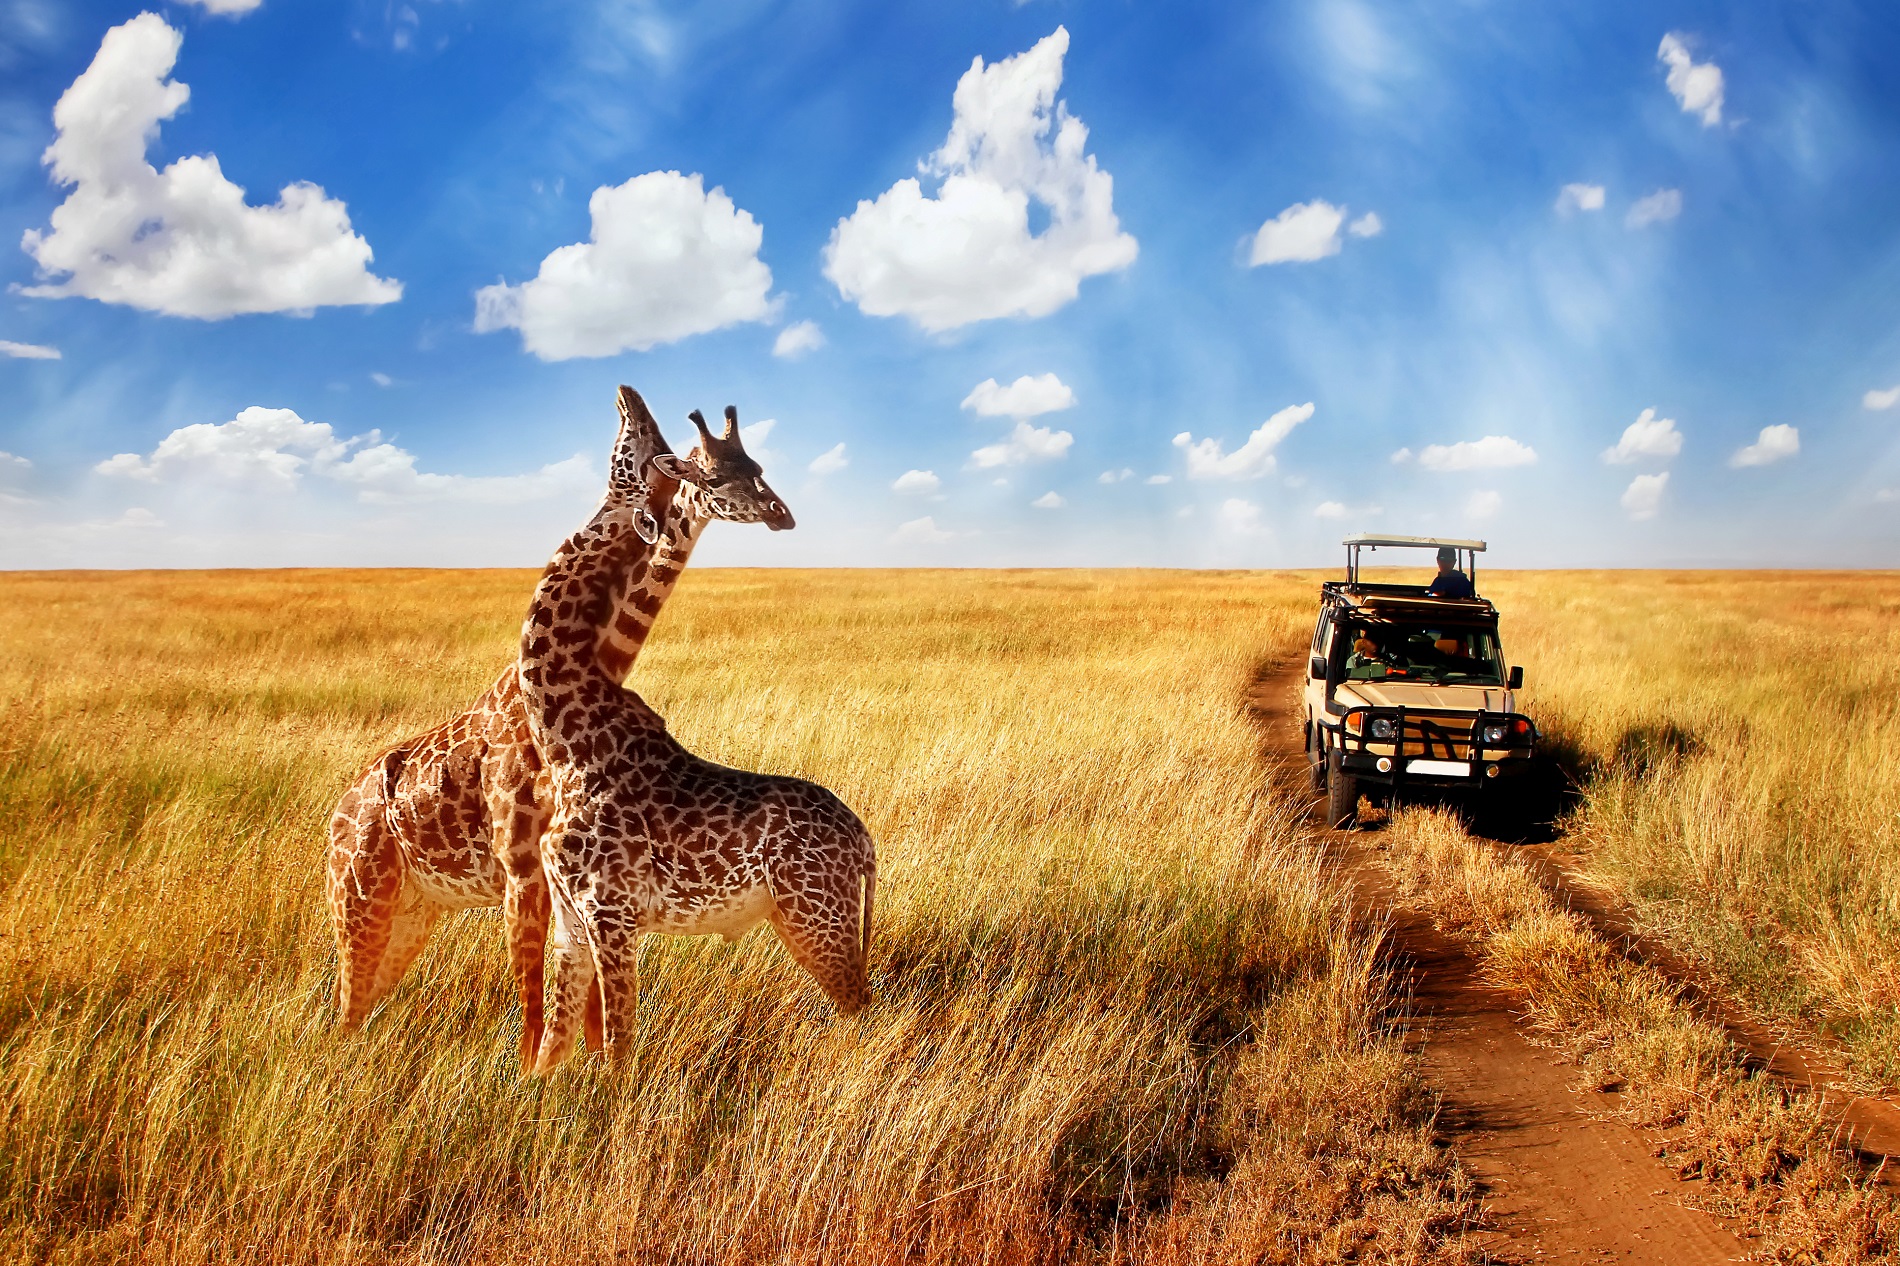 africa safari trips